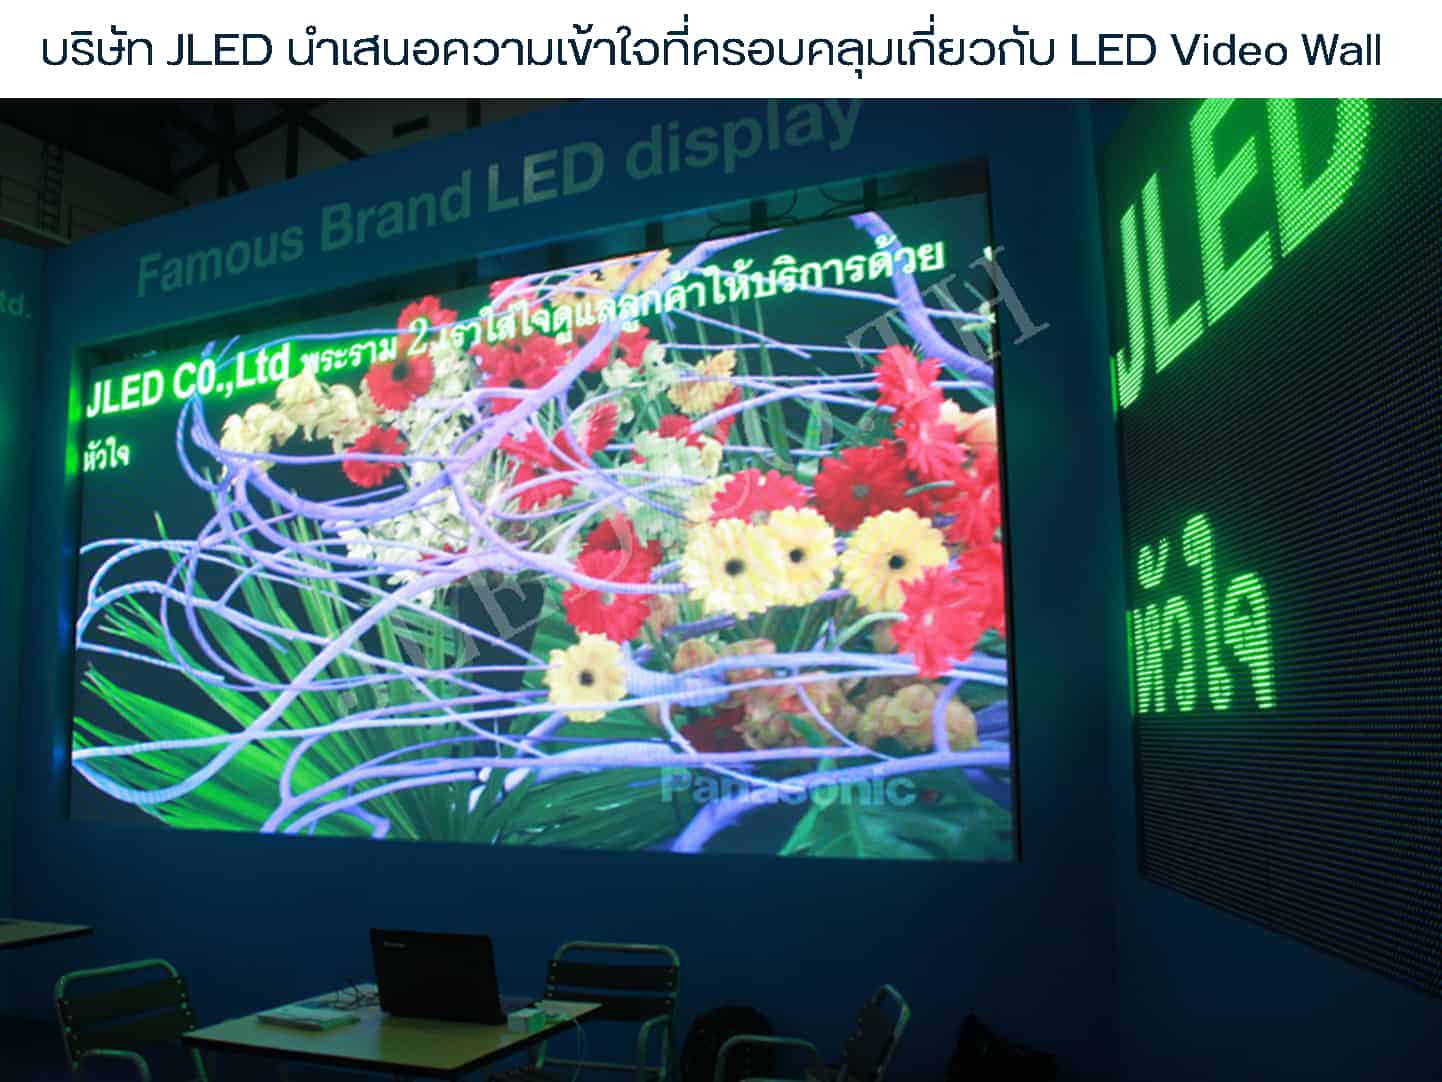 บริษัท JLED นำเสนอความเข้าใจที่ครอบคลุมเกี่ยวกับ LED Video Wall